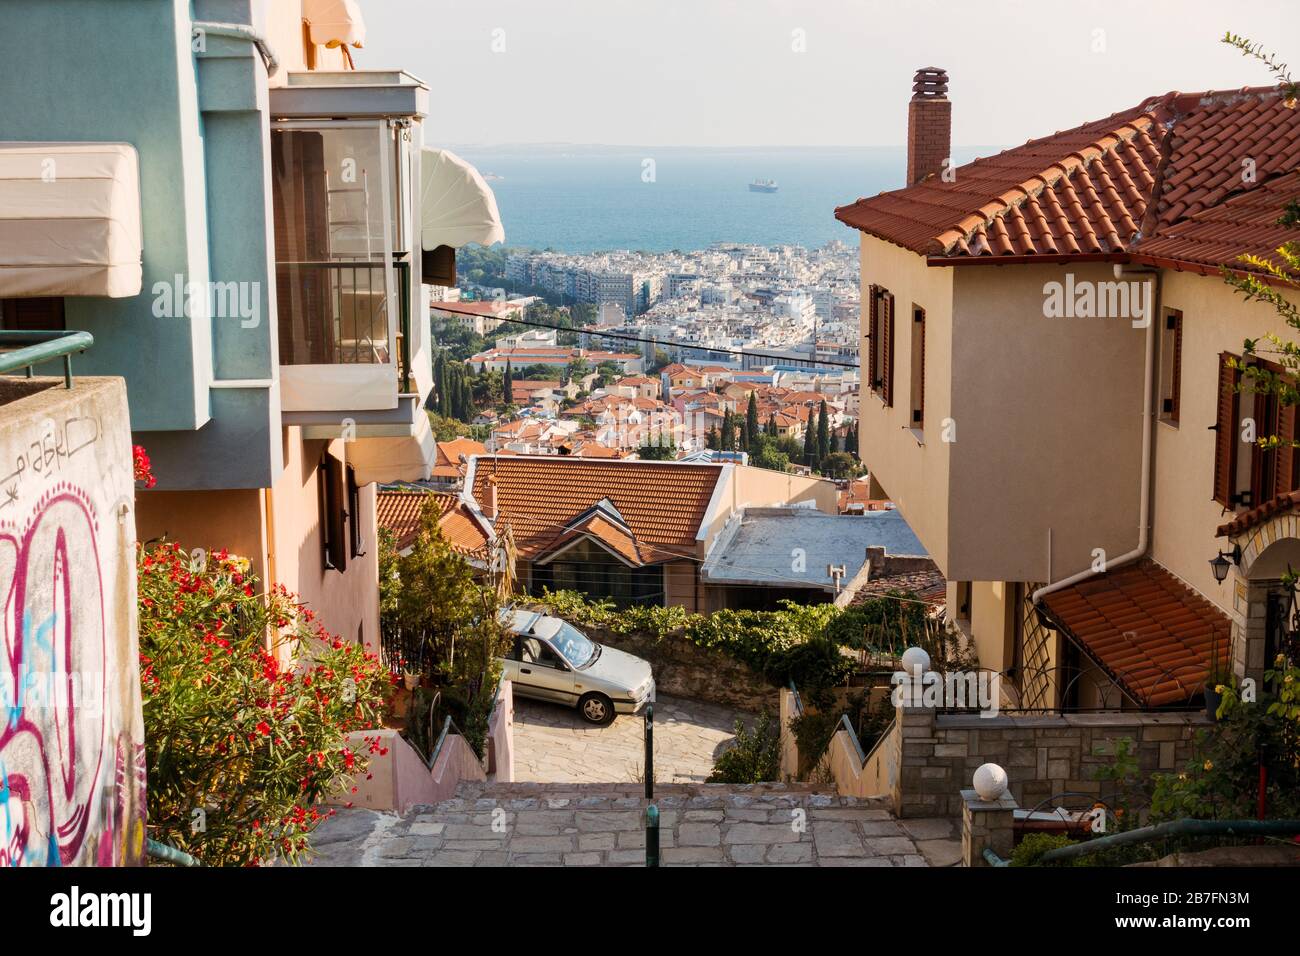 Affacciato sul mare del Golfo Termaico da un'elevata periferia residenziale di Salonicco, Grecia. Un muro sulla sinistra è visto graffiato Foto Stock